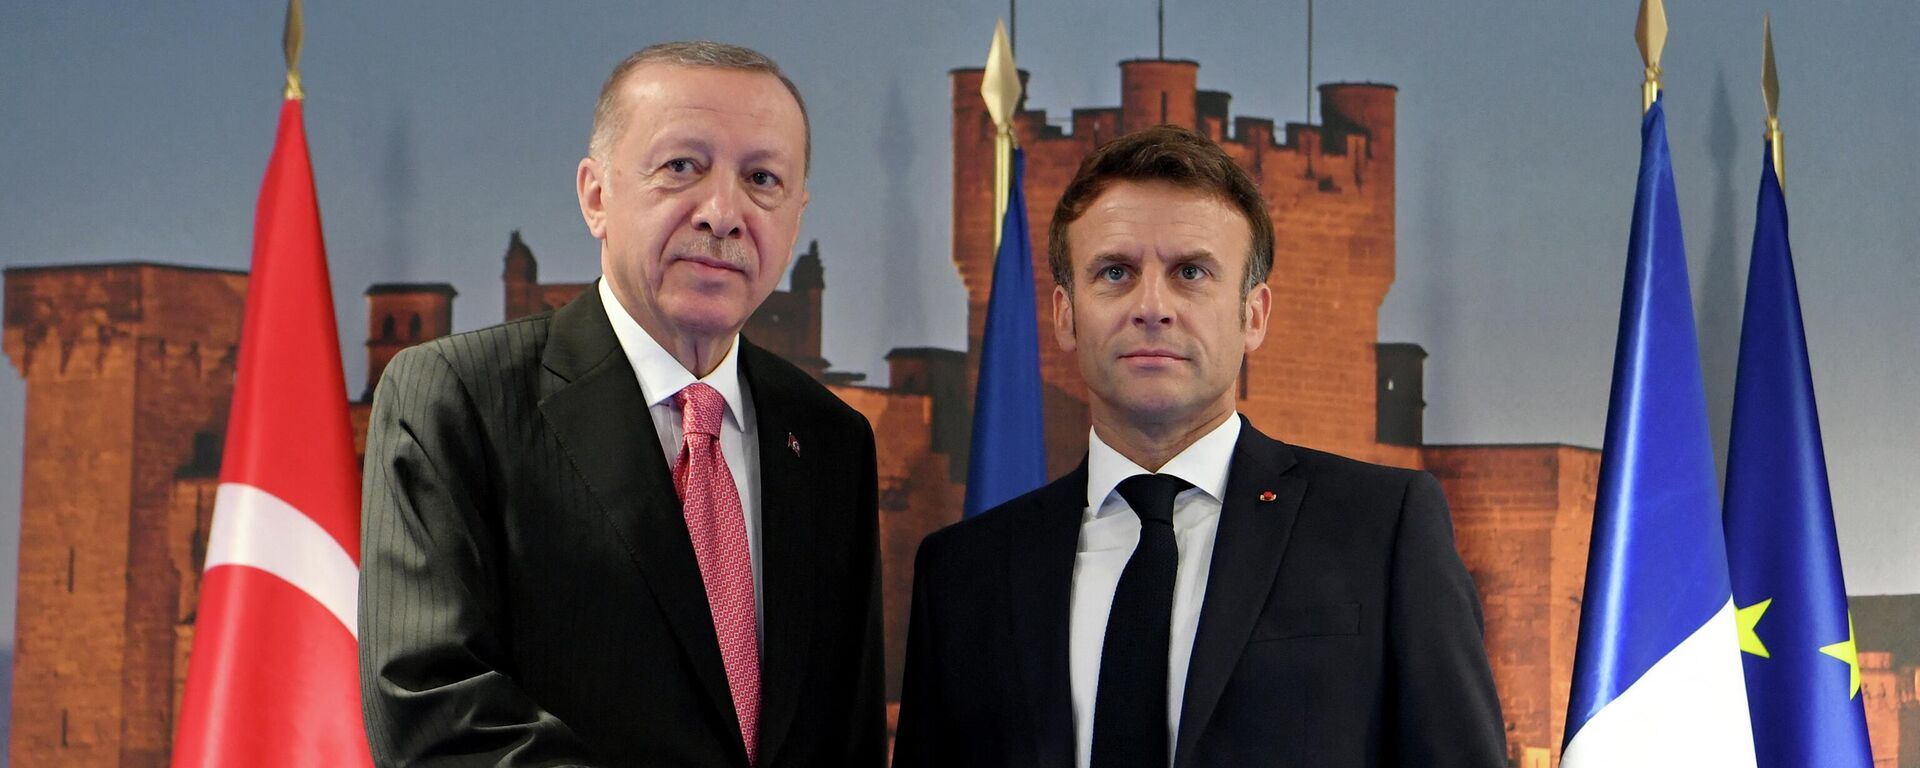 Tổng thống Pháp Emmanuel Macron và Tổng thống Thổ Nhĩ Kỳ Recep Tayyip Erdogan bắt tay nhau ở Madrid - Sputnik Việt Nam, 1920, 29.06.2022